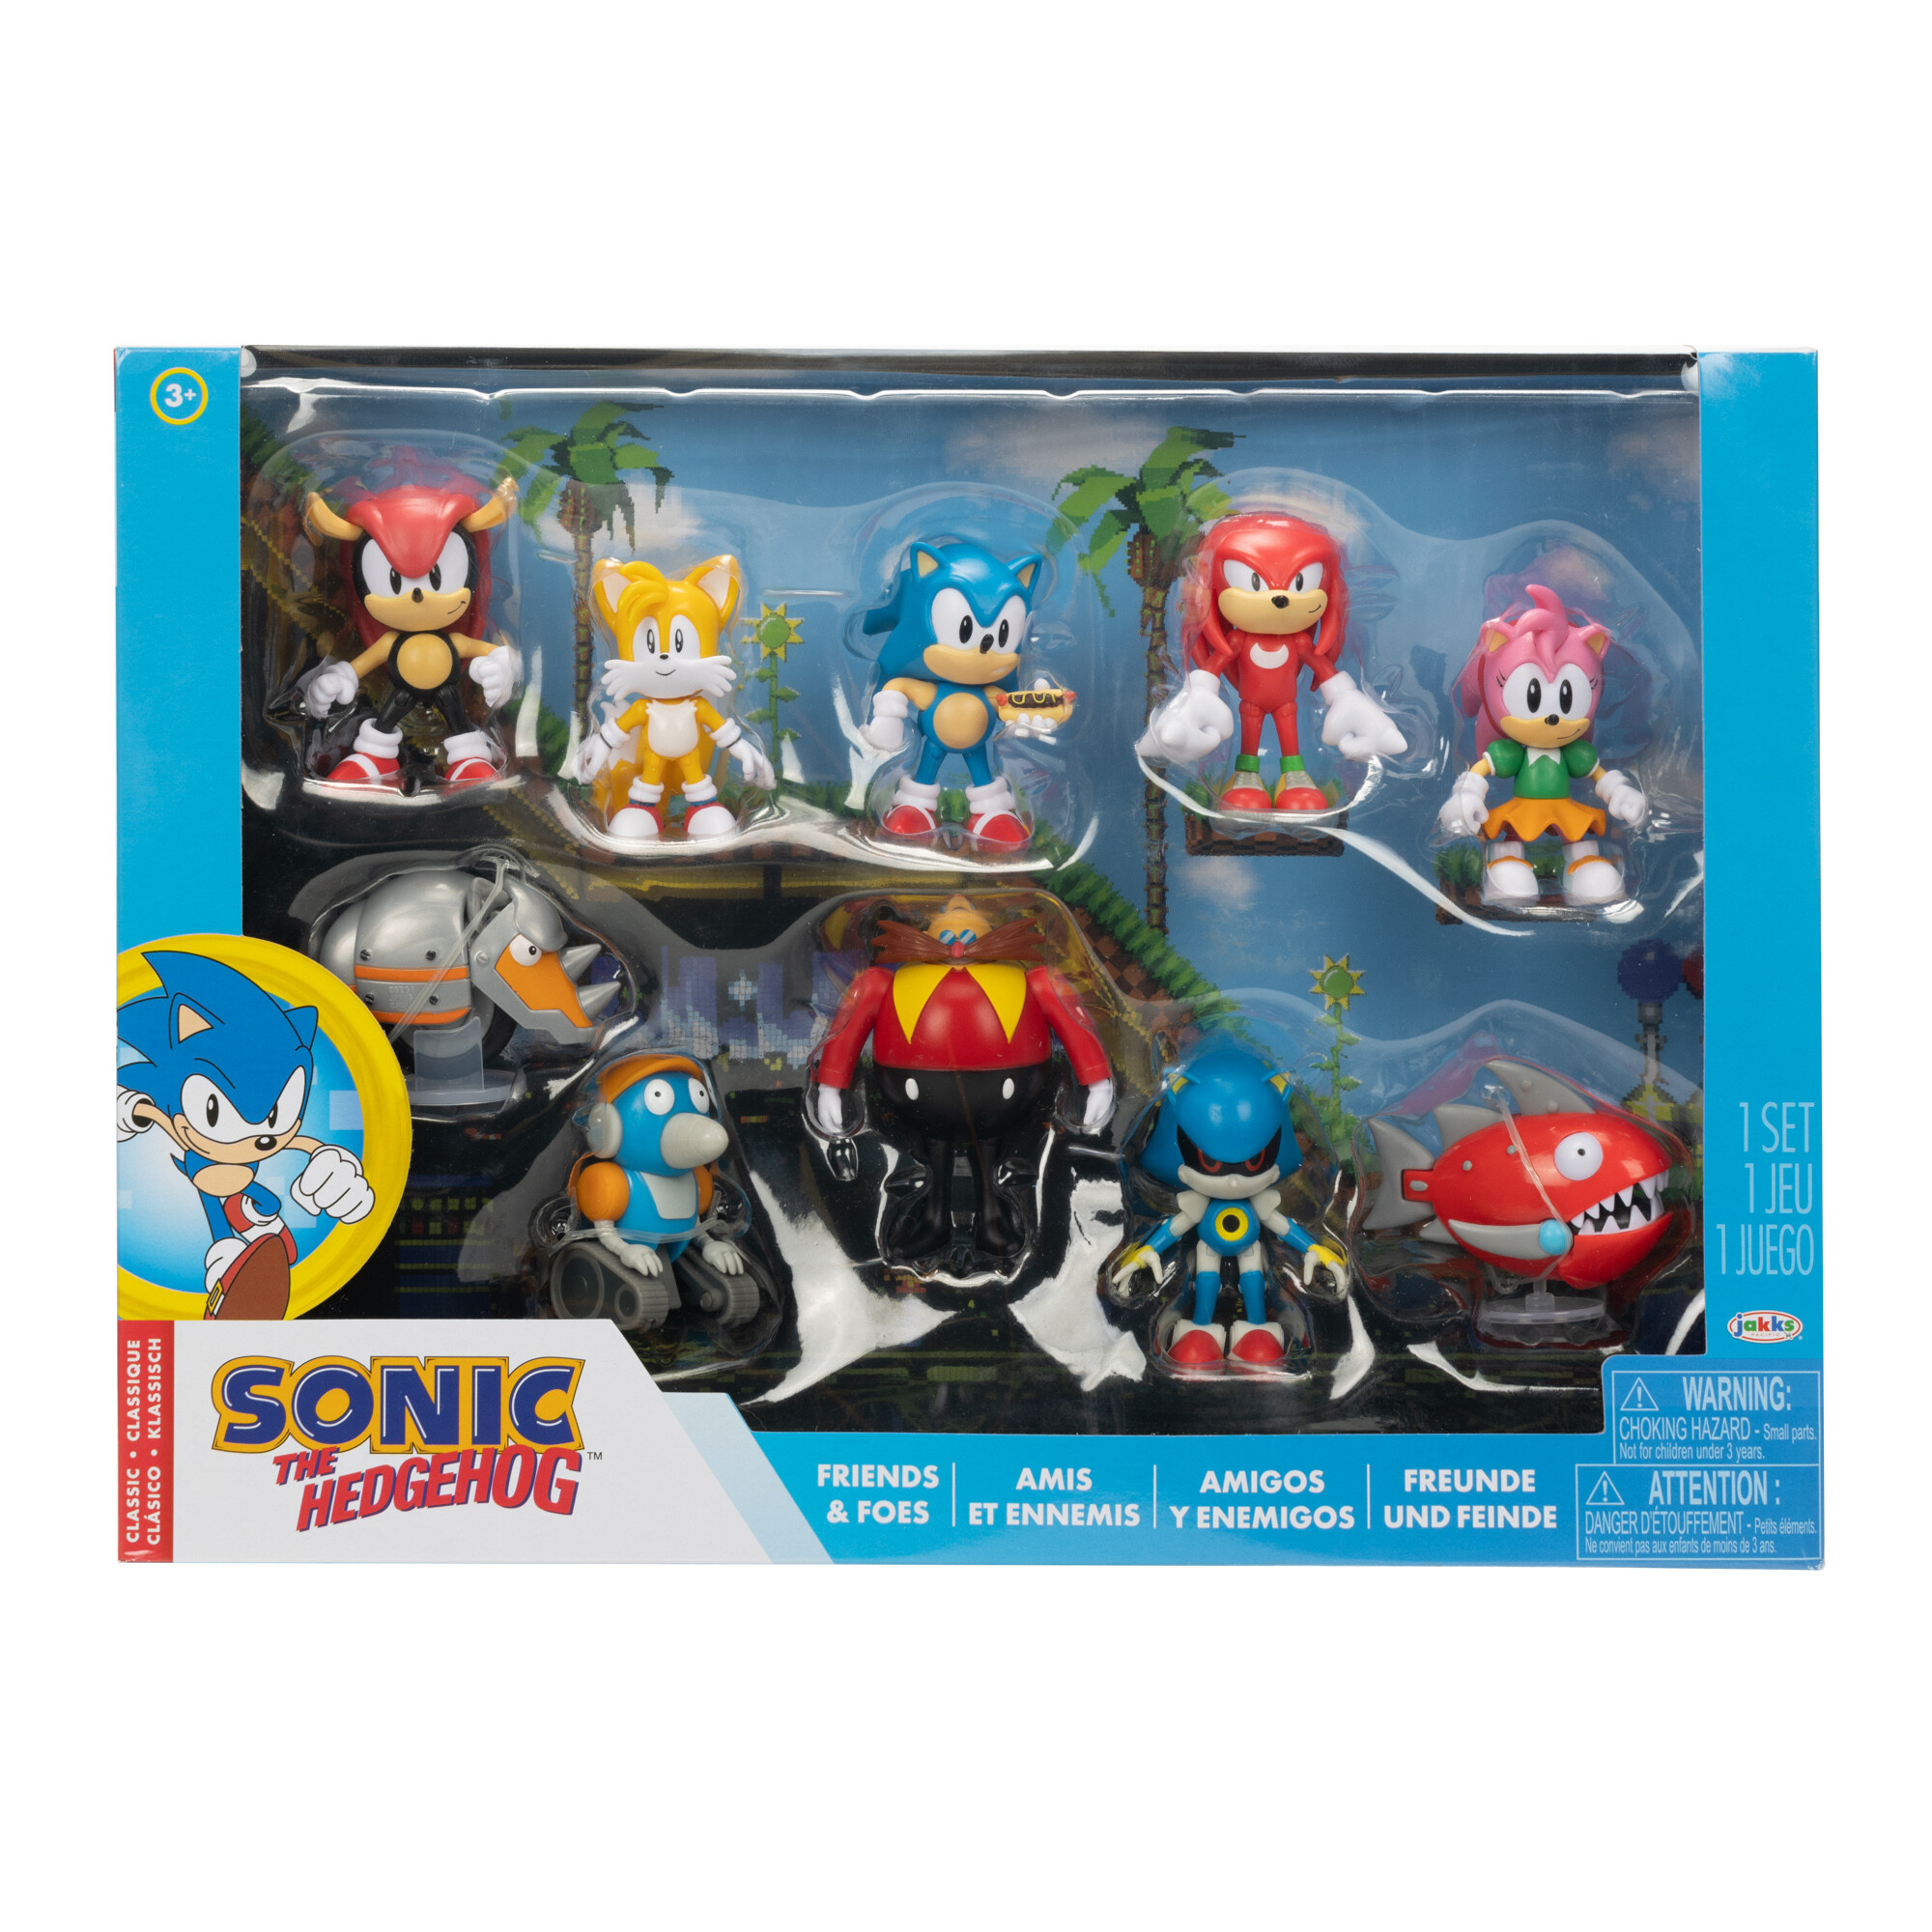 Grandi Giochi Personaggio Goo JIT Zu Minis Sonic, Super Sonic - Giocattoli  online, Giochi online